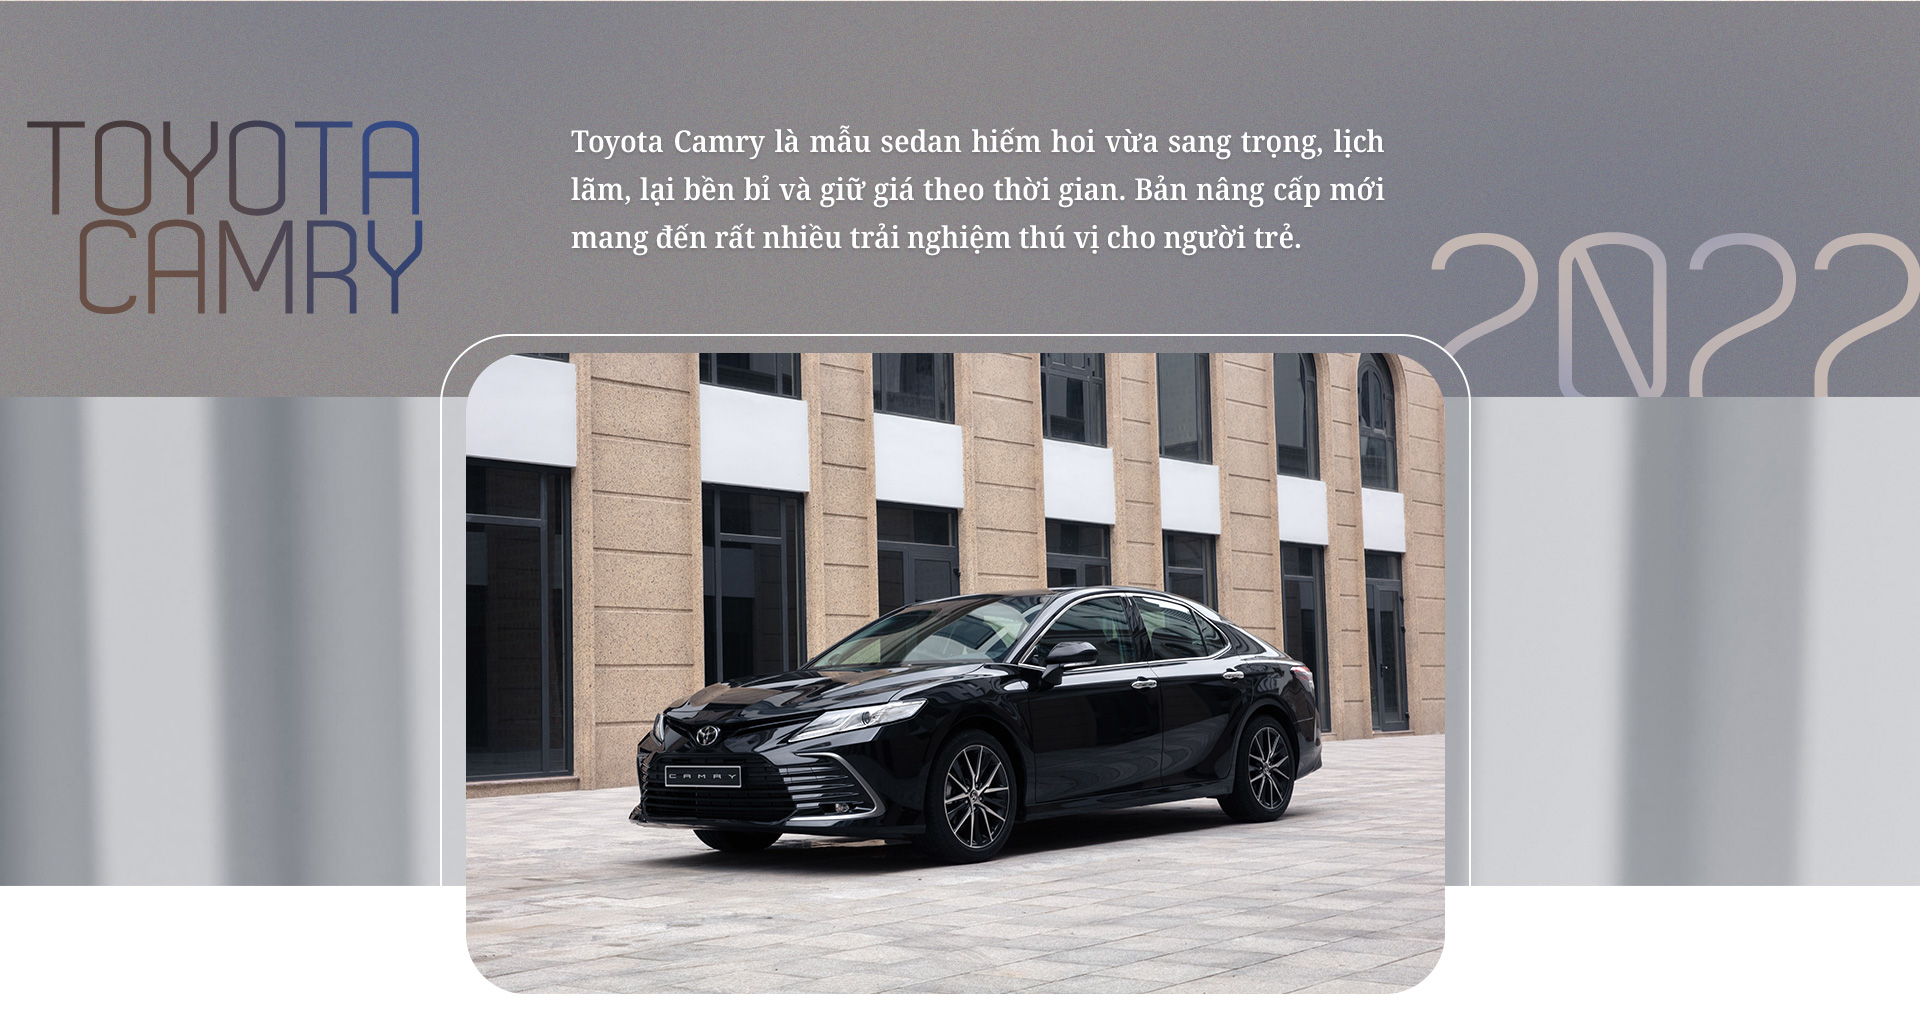 Những lý do Toyota Camry 2022 hợp với doanh nhân trẻ tại Việt Nam - 5